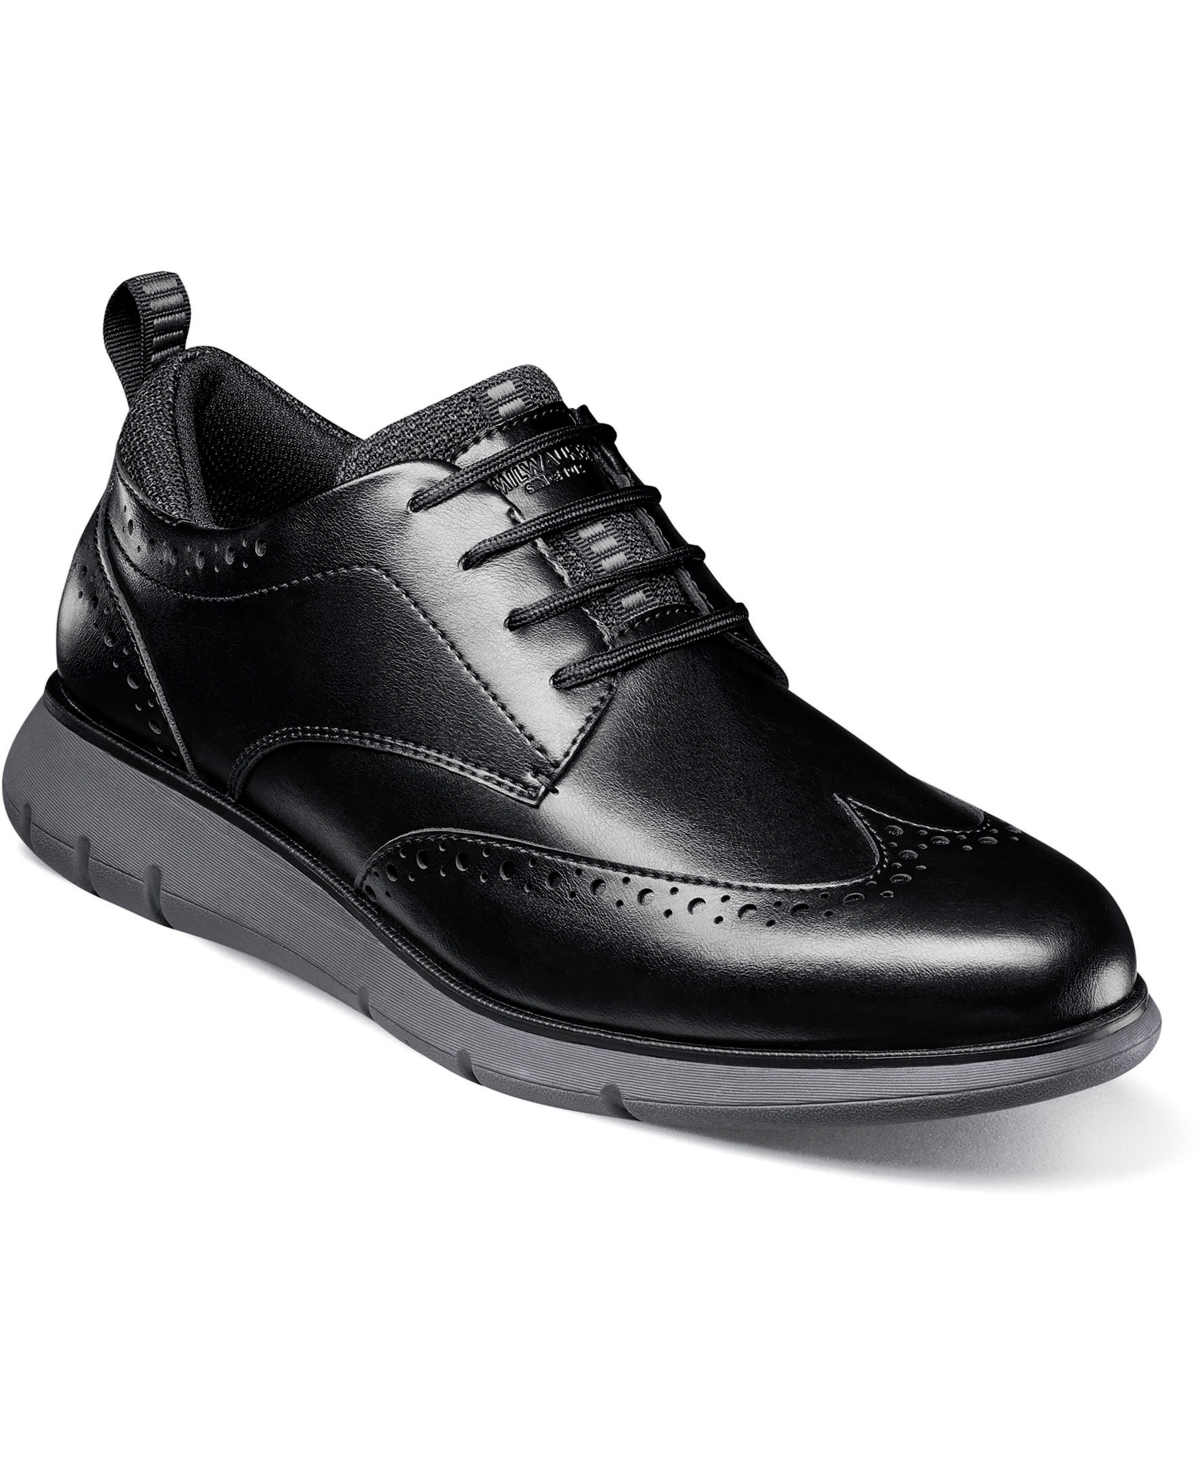 Men's Stance Wingtip Casual Oxford Shoes - Cognac Multi